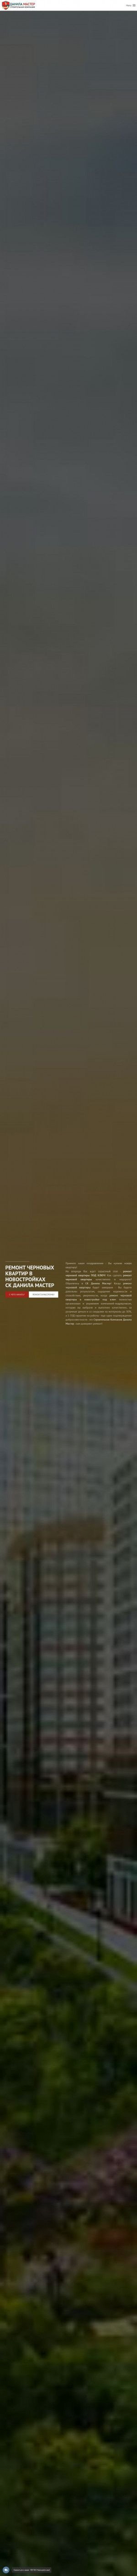 Предпросмотр для скдм-ремонтновостройки.рф — СК Данила Мастер